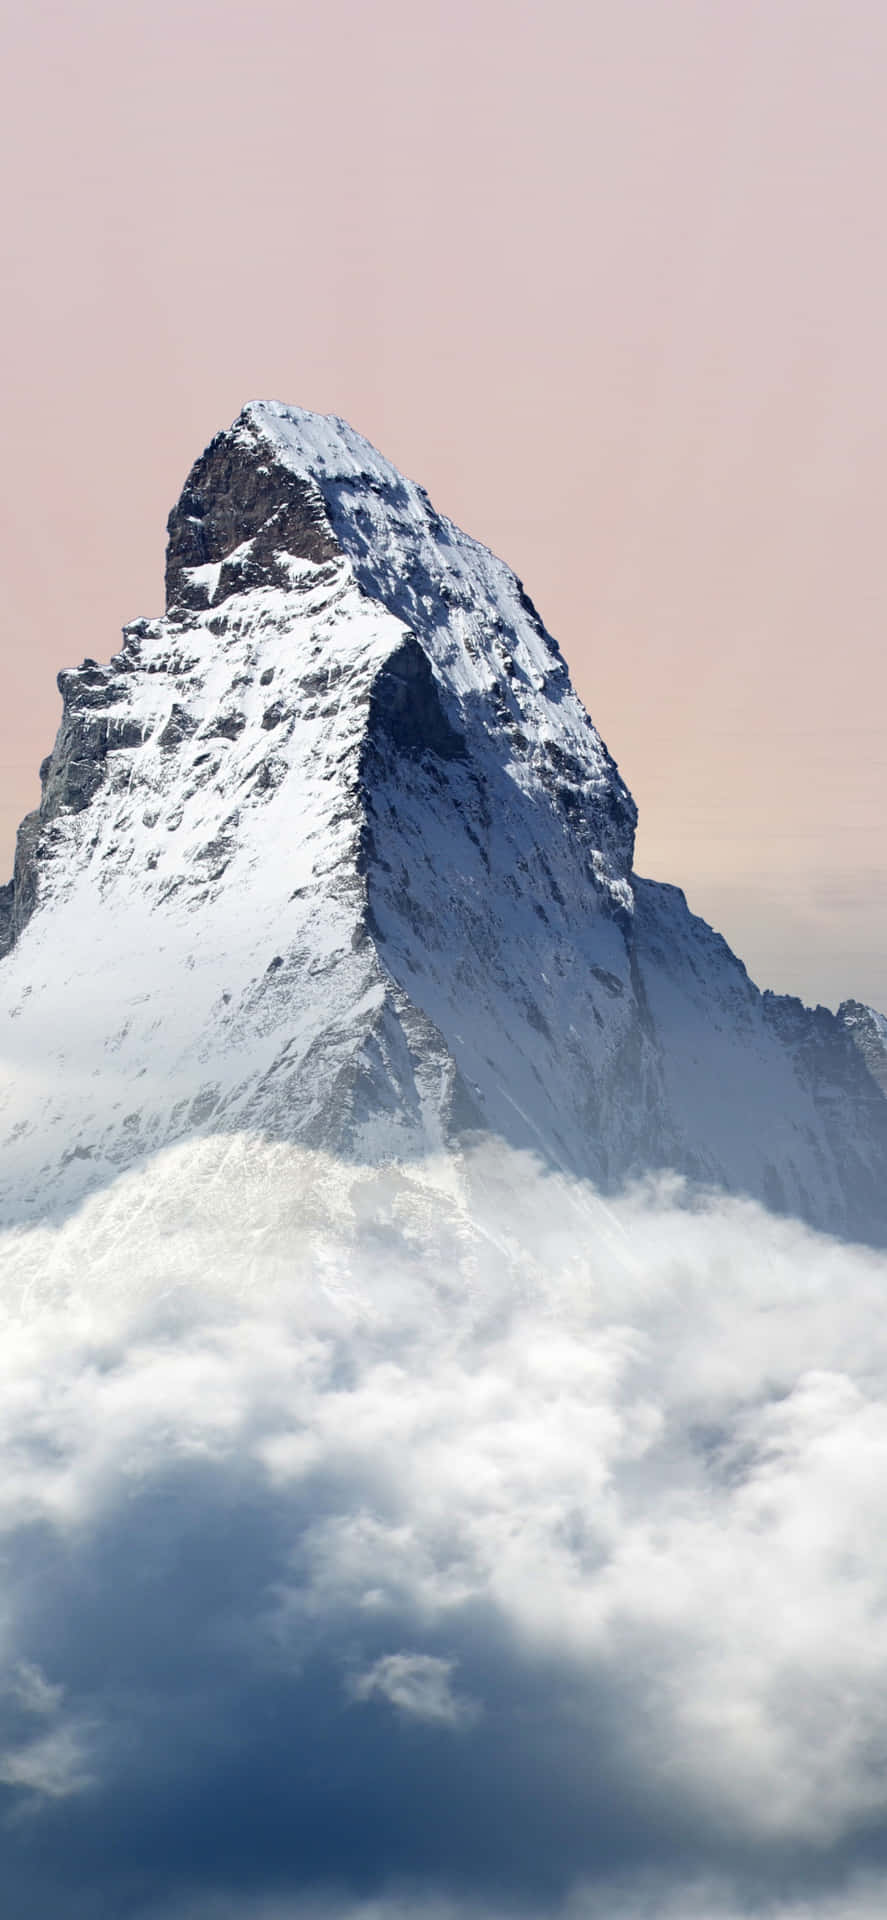 Matterhorn Mountain Above The Clouds Wallpaper